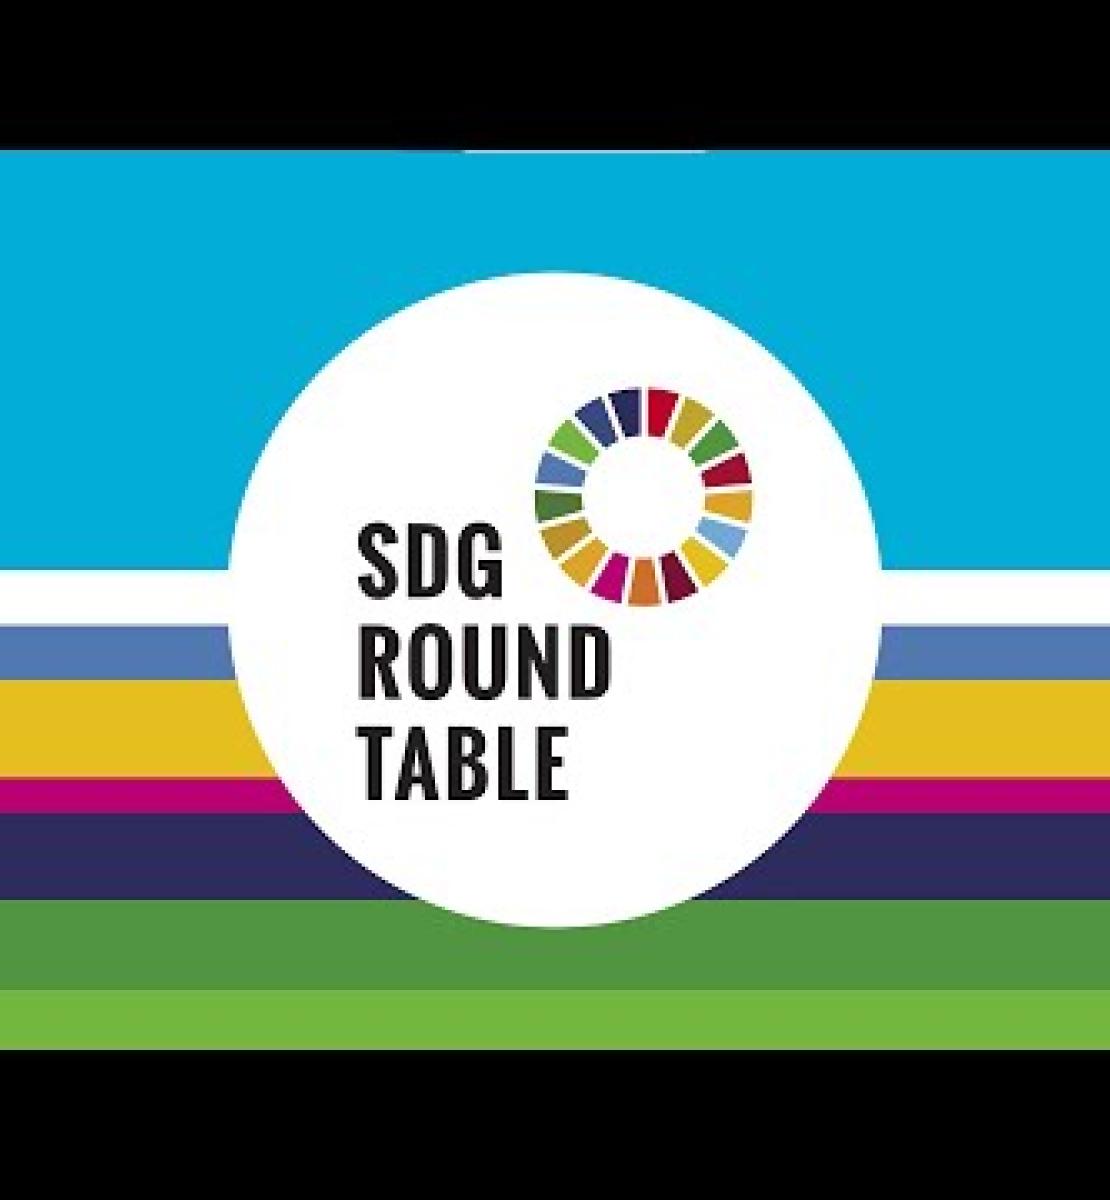 Antesala al Momento ODS: Mesa redonda de Coordinadores Residentes de las Naciones Unidas - 'Ambición, la sociedad en su totalidad, confianza y acción'